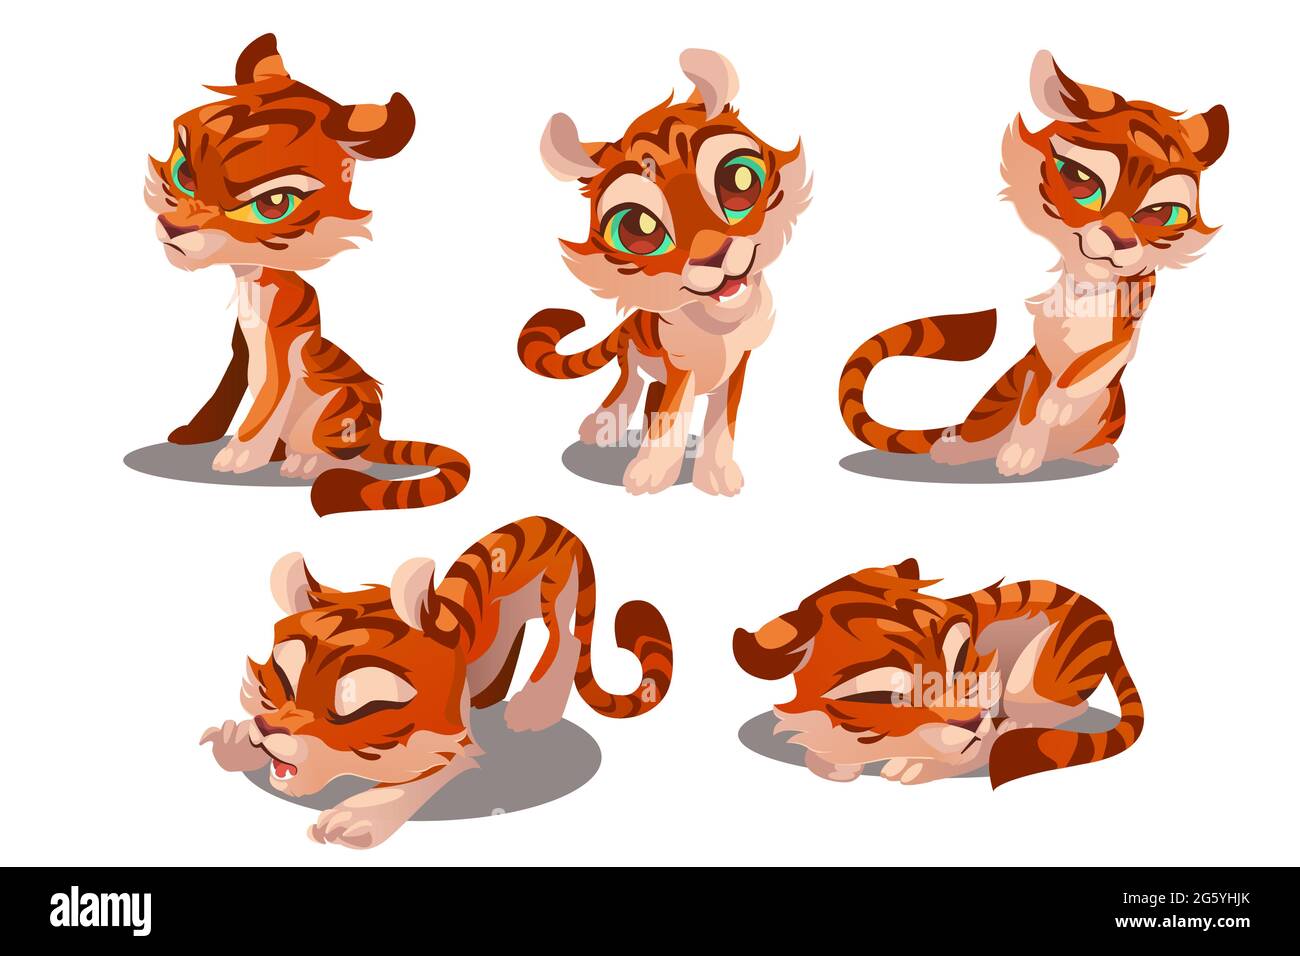 Niedliche Baby Tiger Charakter mit verschiedenen Emotionen isoliert auf weißem Hintergrund. Vektor-Set von Cartoon lustige Kätzchen flirtet, lächeln, schlafen, wütend und streckt. Kreatives Emoji-Set, Tiermaskottchen Stock Vektor